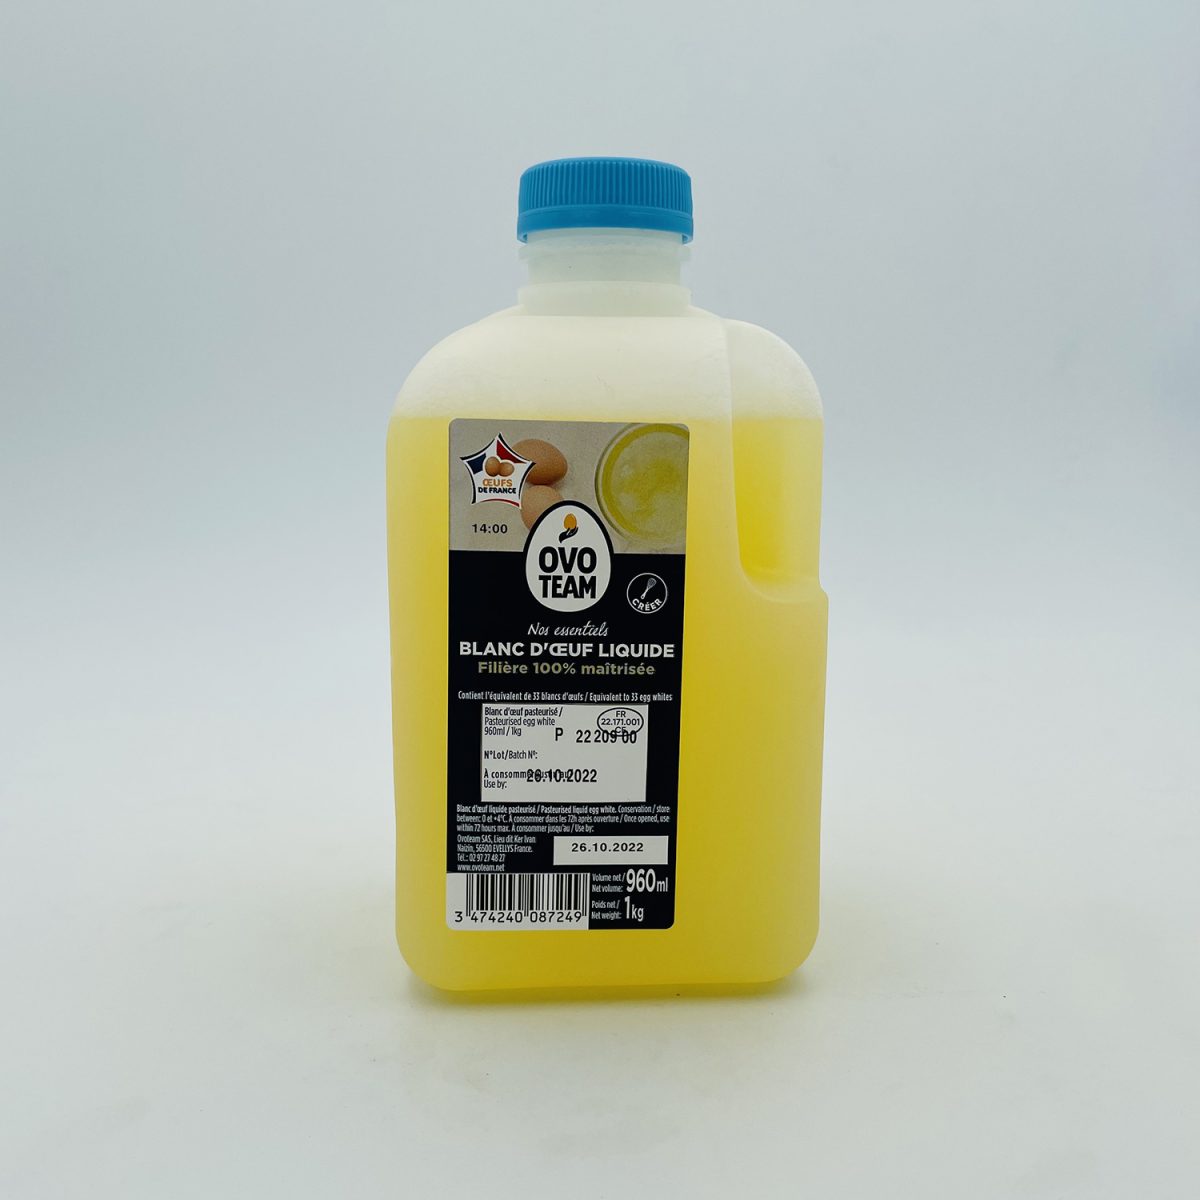 Blanc d'Oeuf Liquide Pasteurisé 1kg - Blancs Oeuf de poule vente